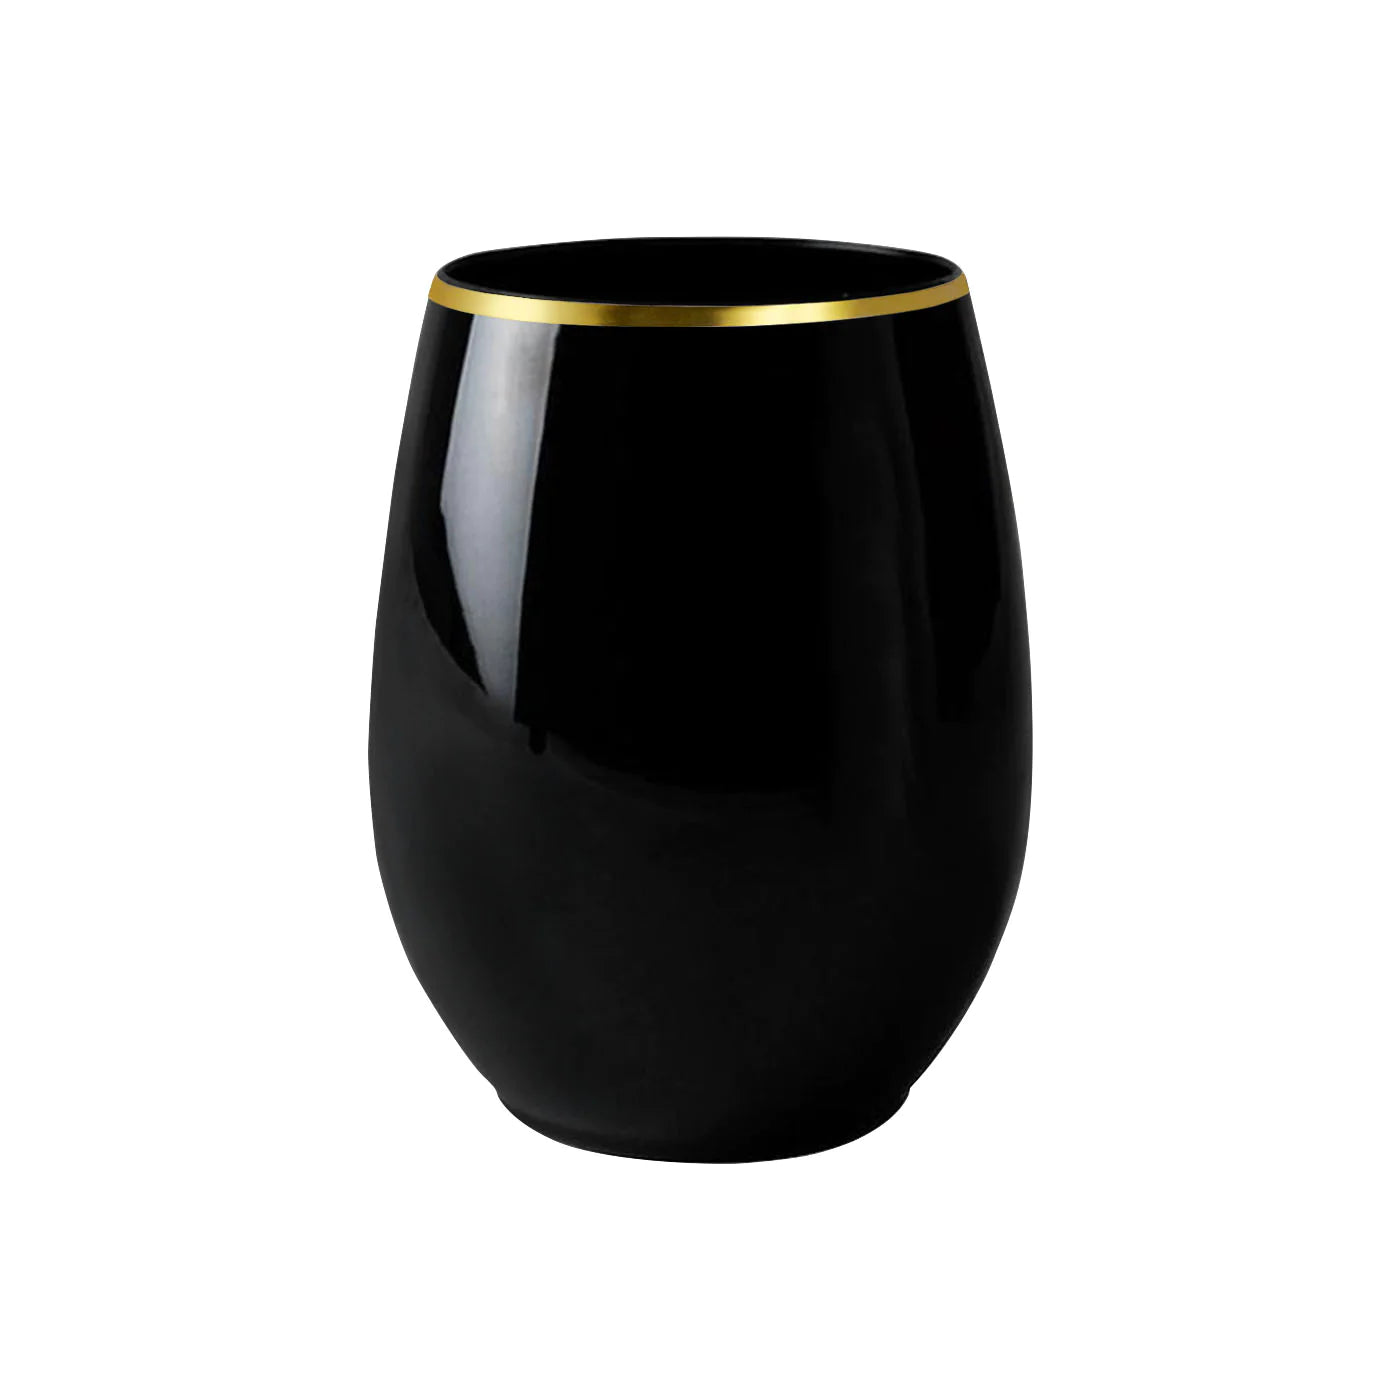 Plastic Glasses - Black Gold Rim Wine Glasses